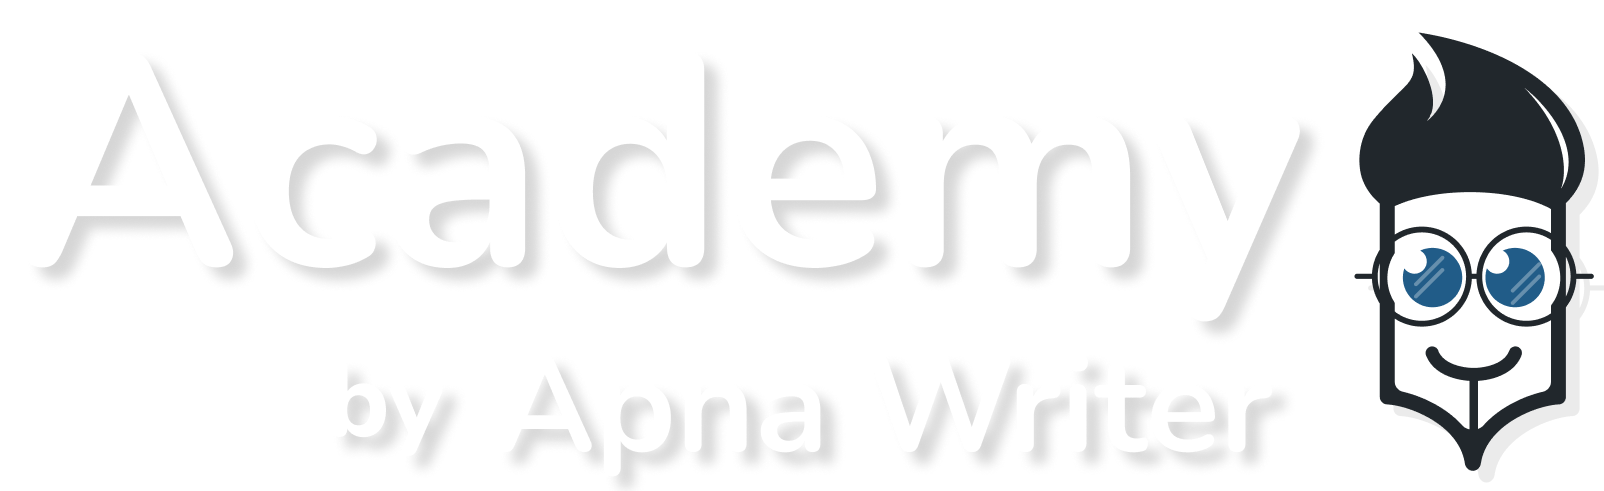 Apna Writer Academy